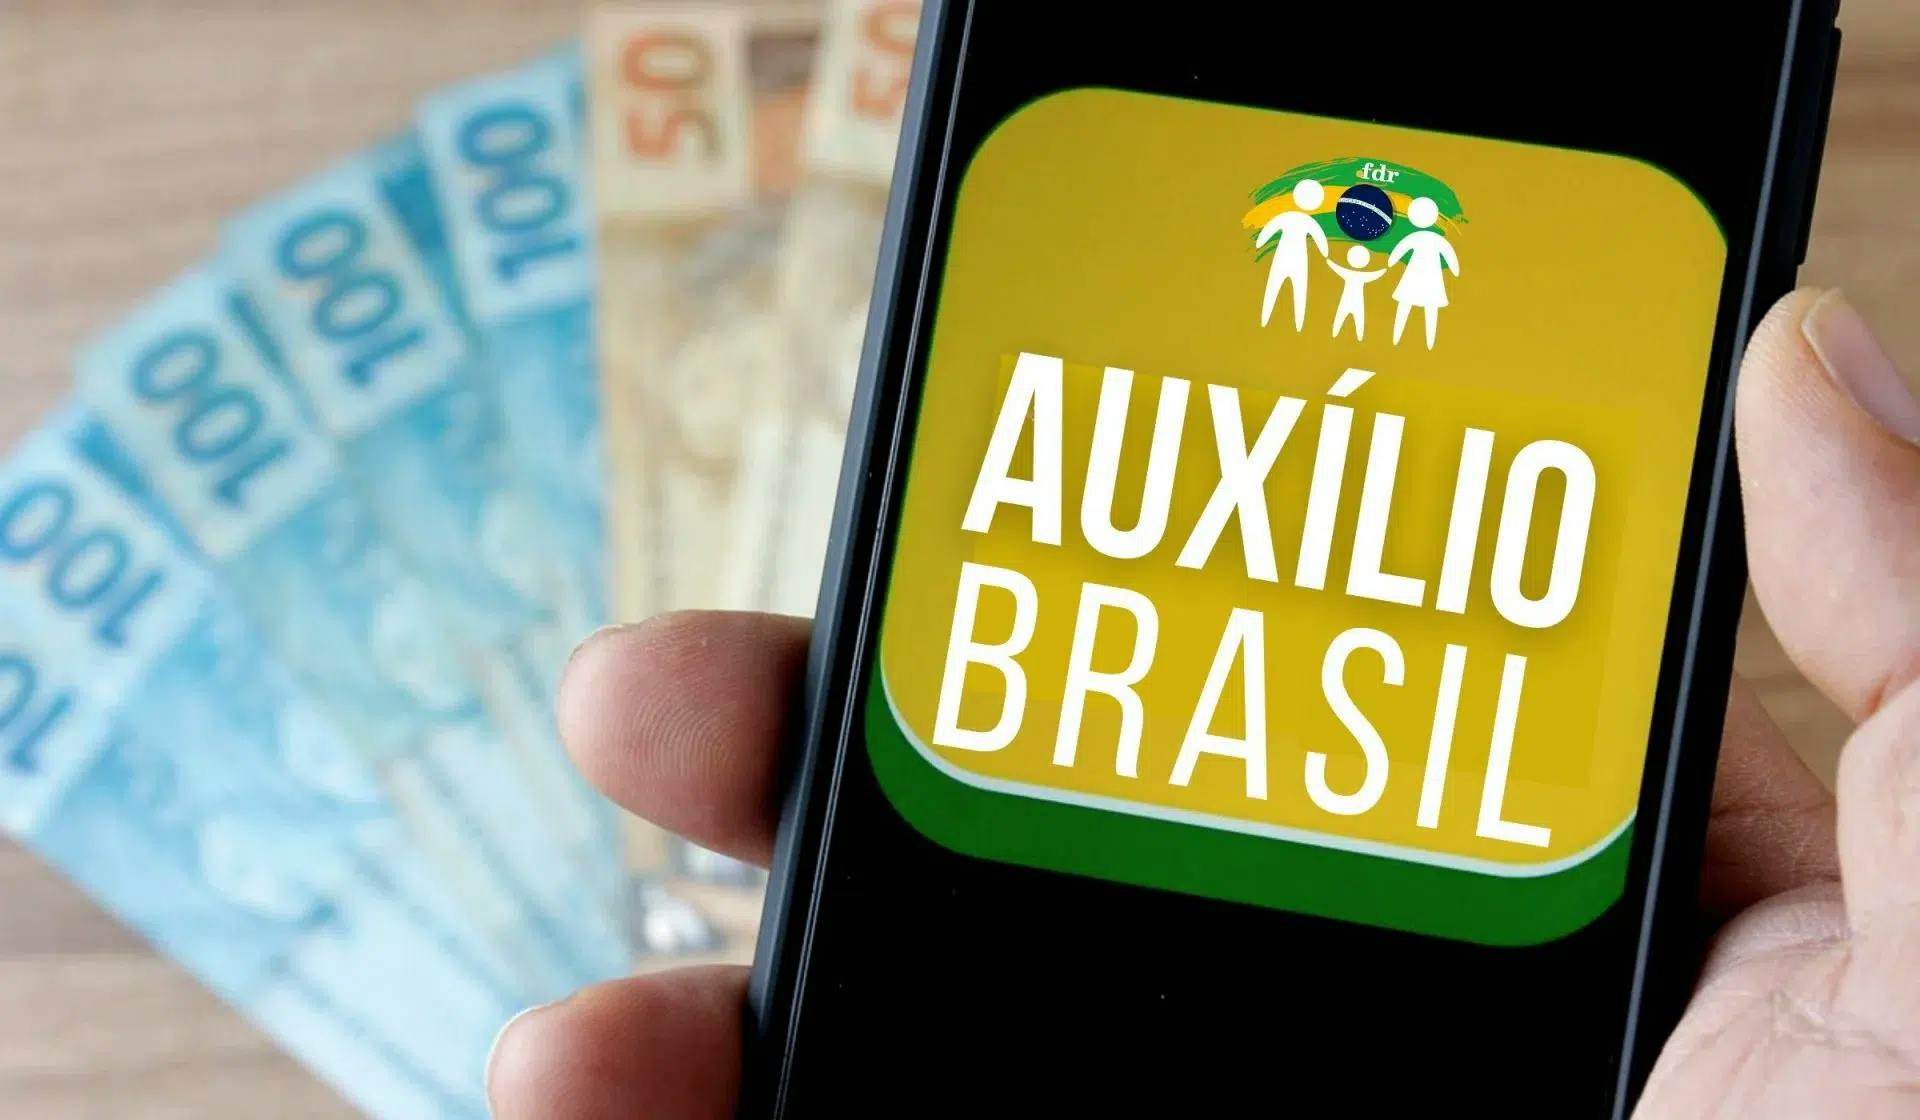 Caixa inicia os pagamentos da terceira parcela do Auxílio Brasil